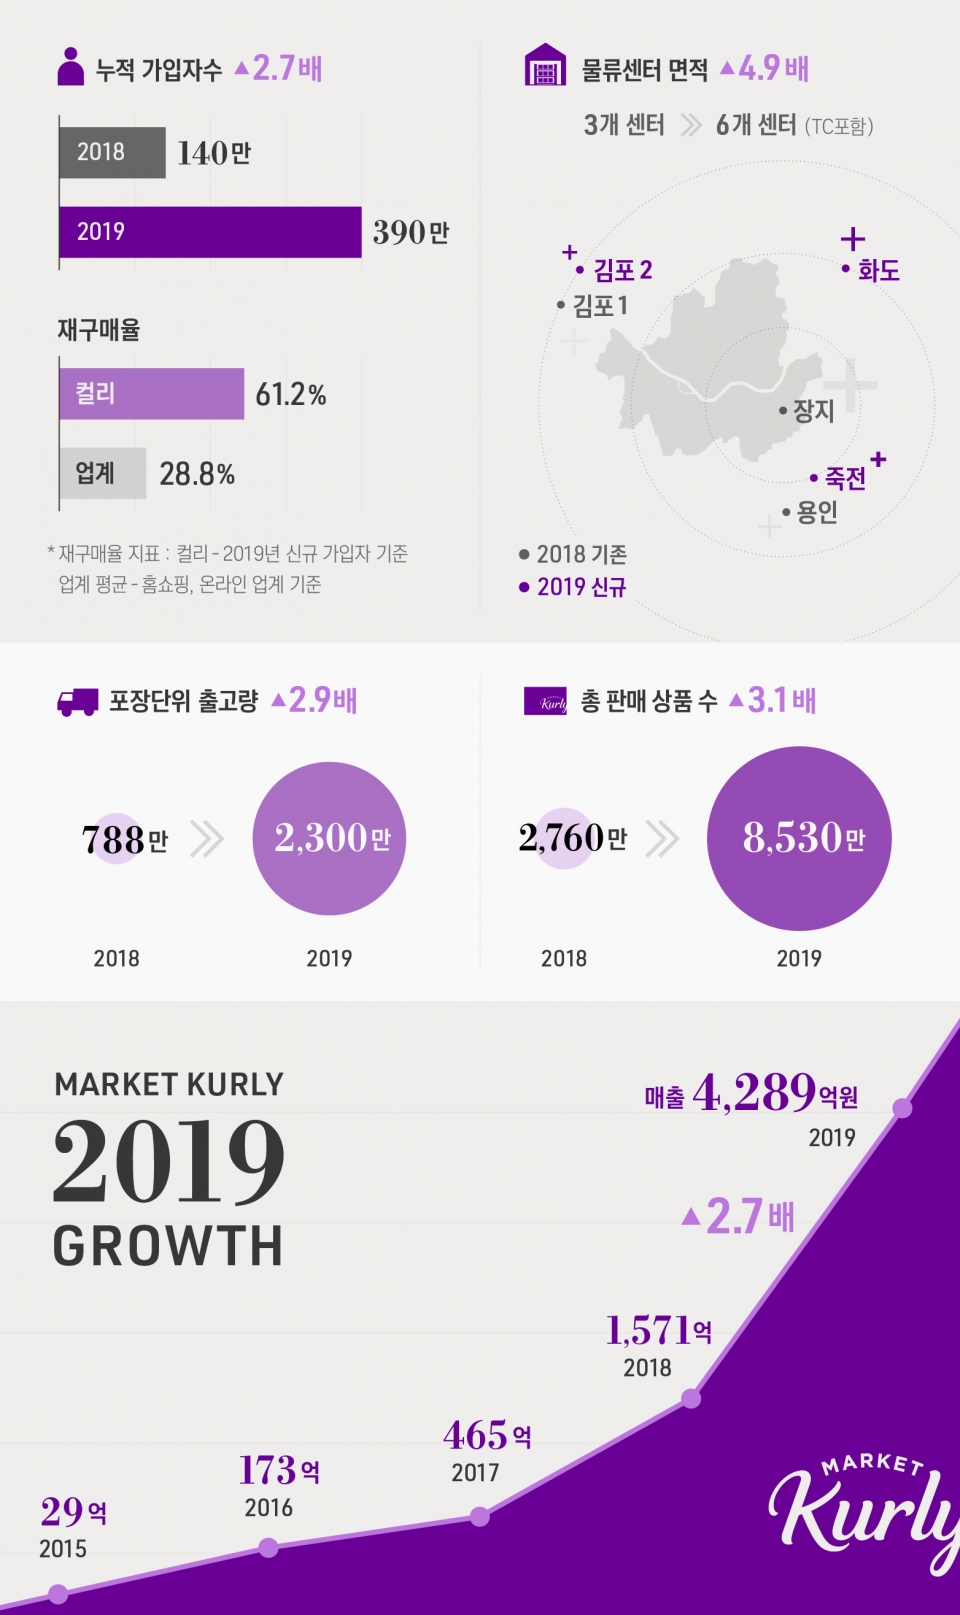 마켓컬리의 2019년 매출이전년 대비 2.7배 증가했다. (출처: 마켓컬리)